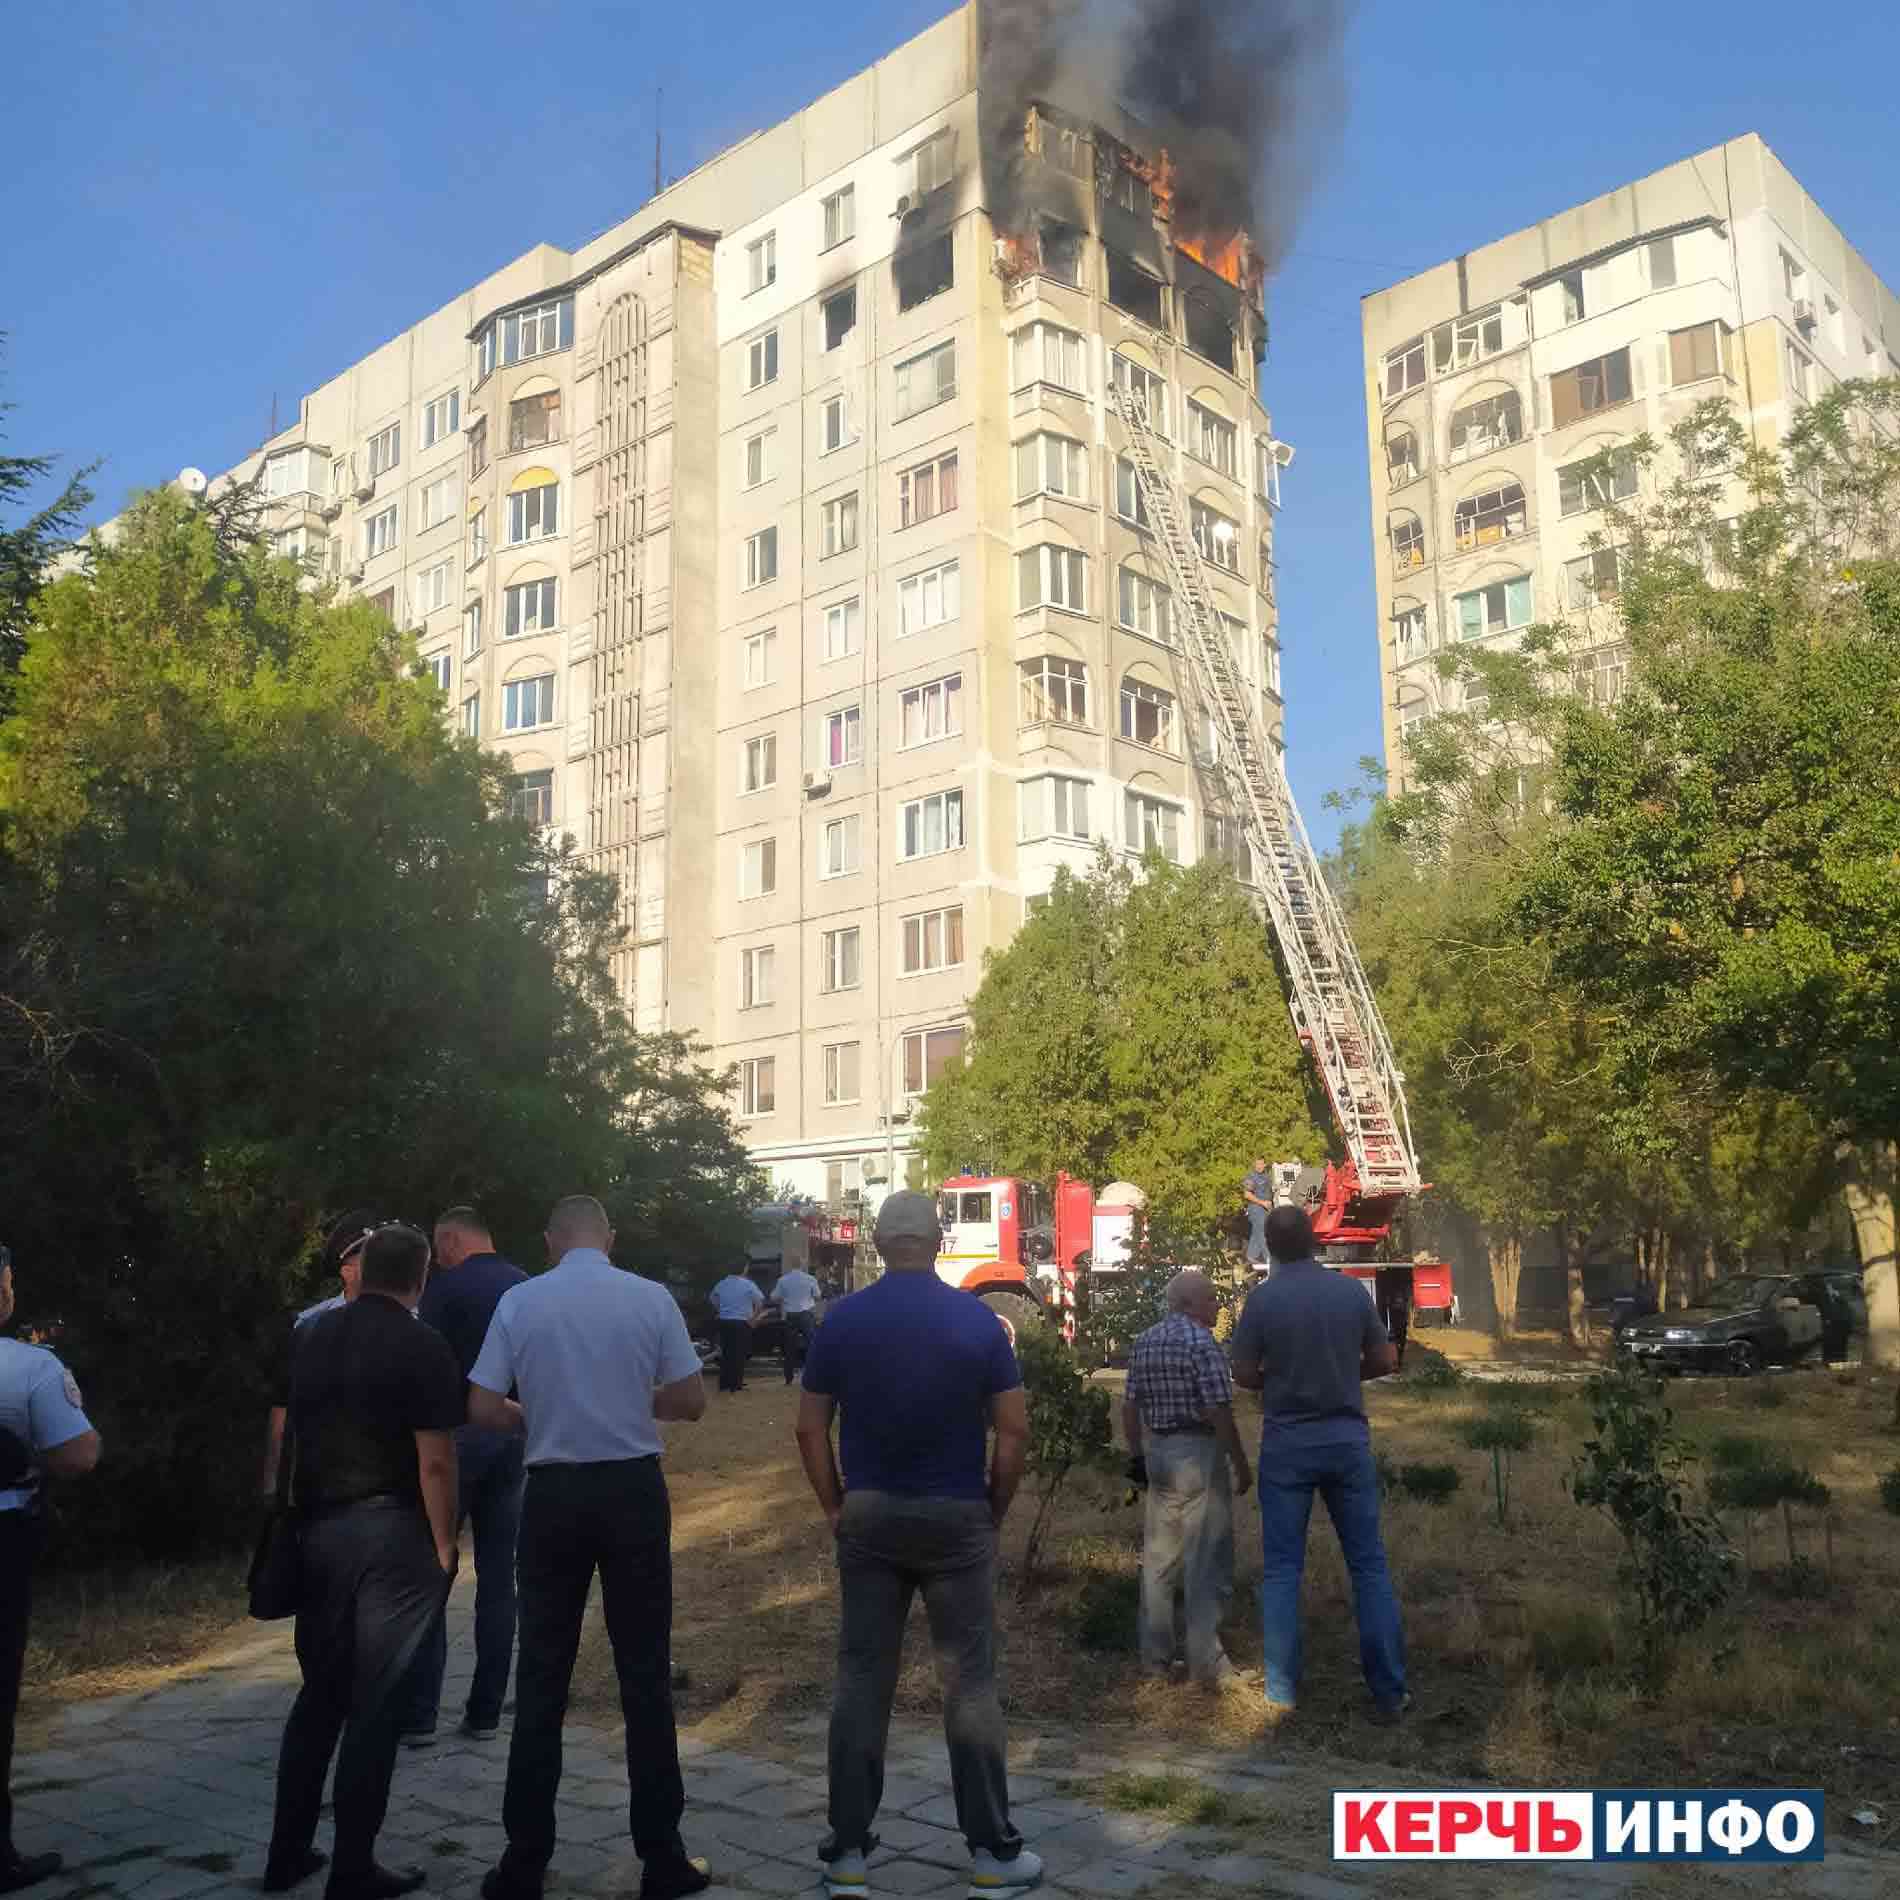 В Керчи взорвалась квартира. Что происходит на месте происшествия? Фото